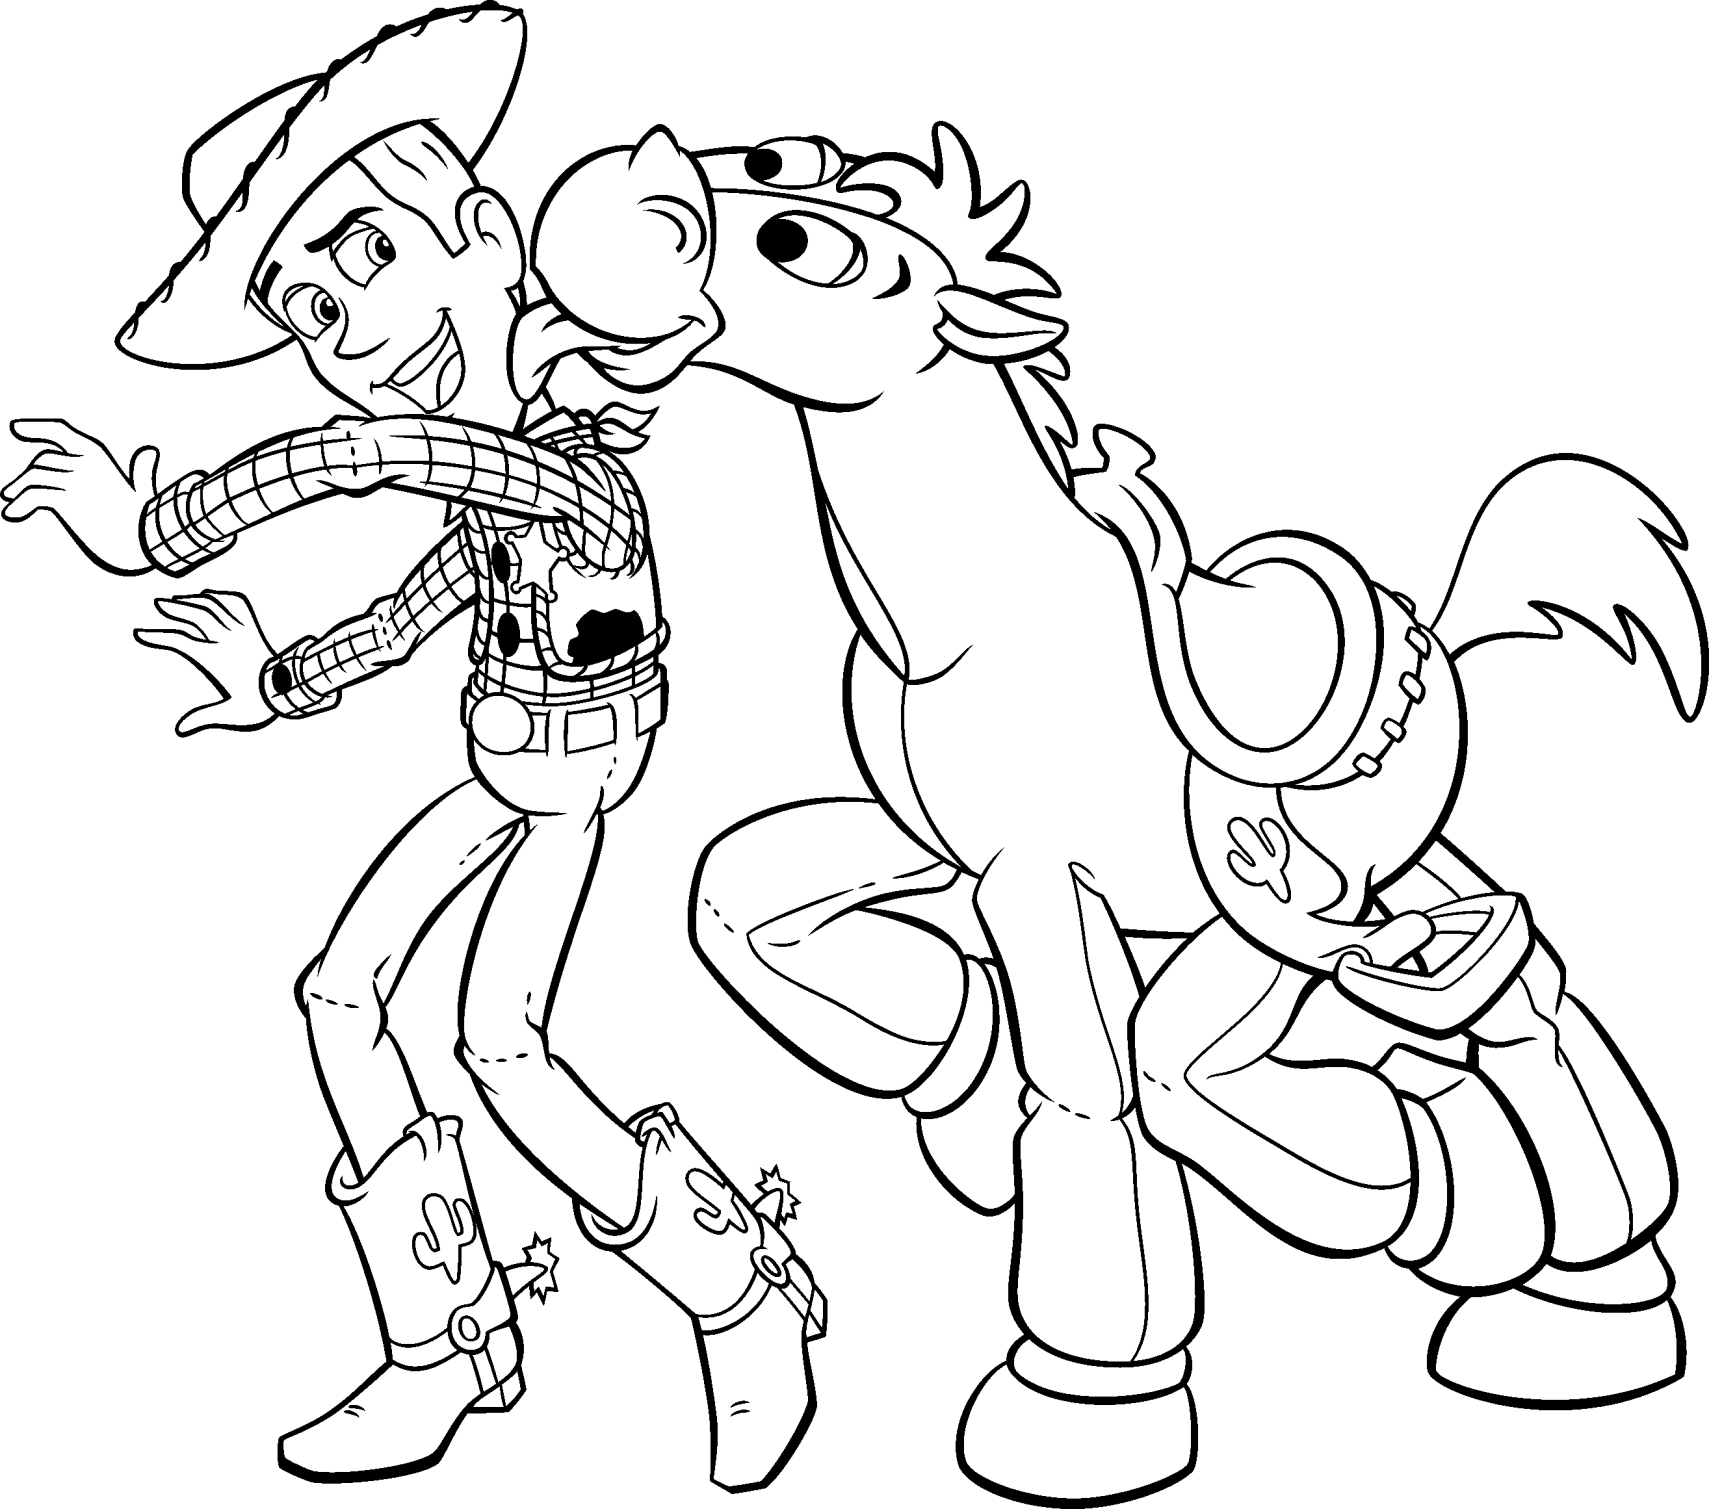 Woody e Bullseye di Toy Story